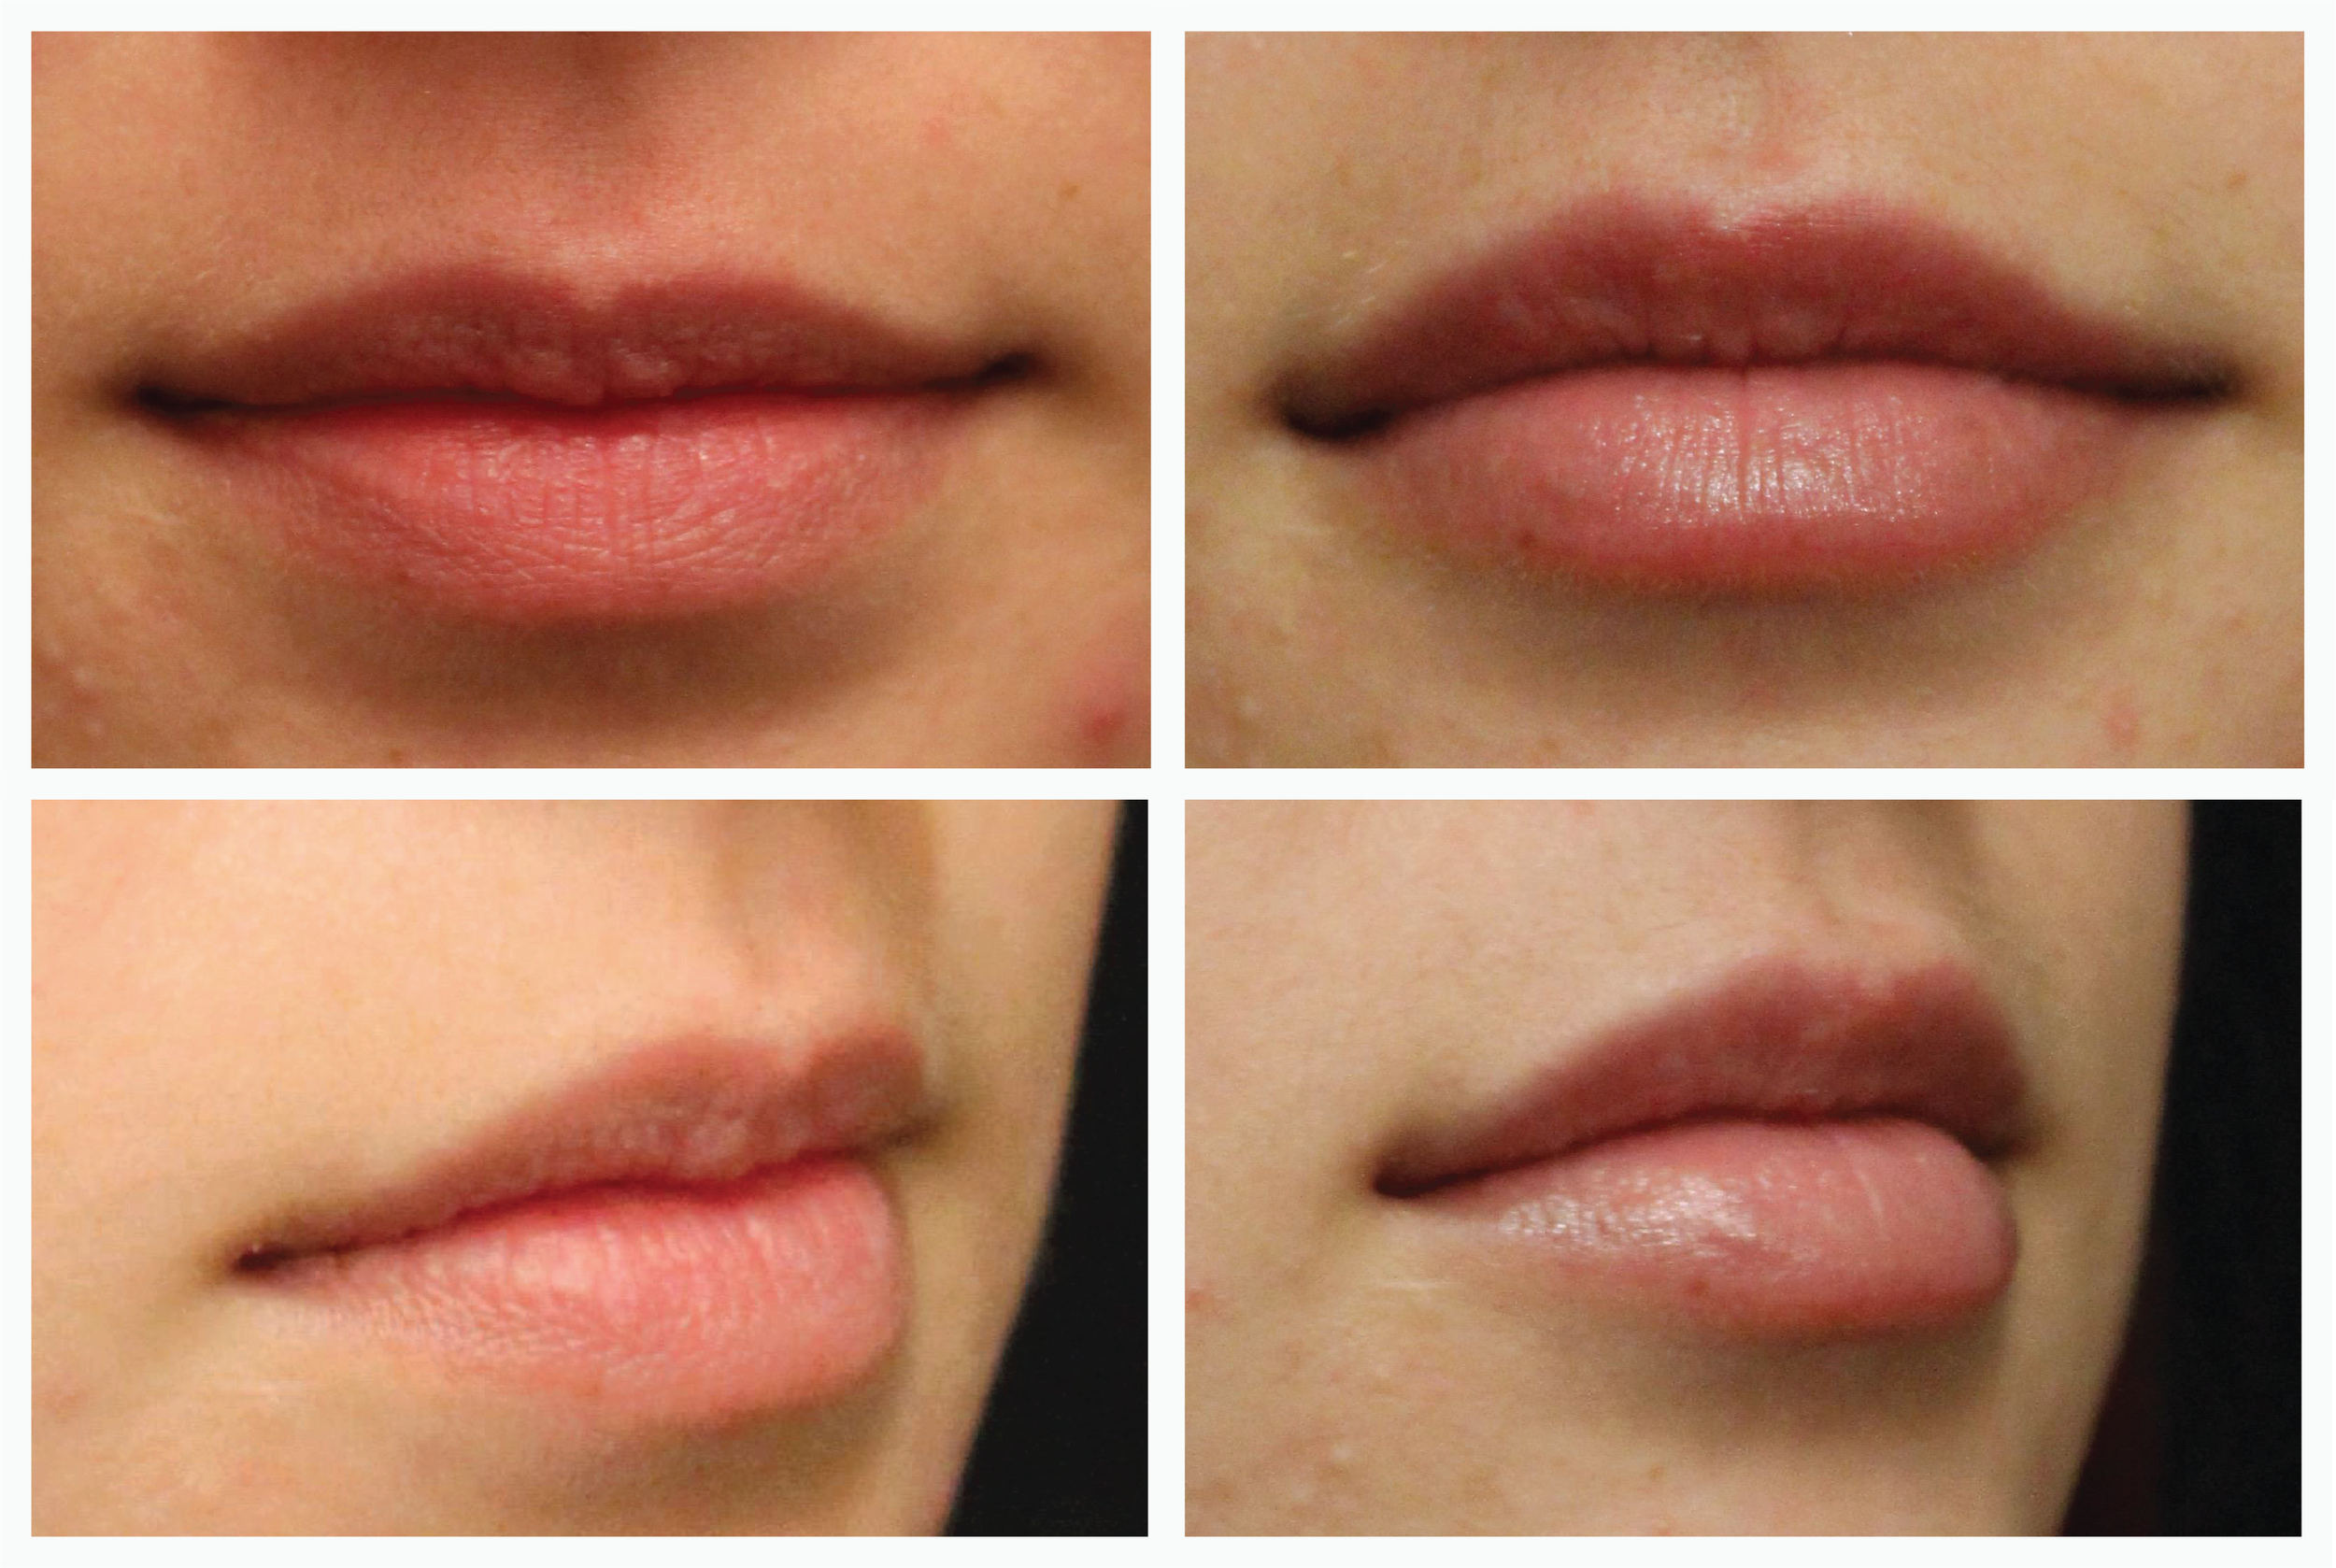 hyaluronic acid lip filler after care